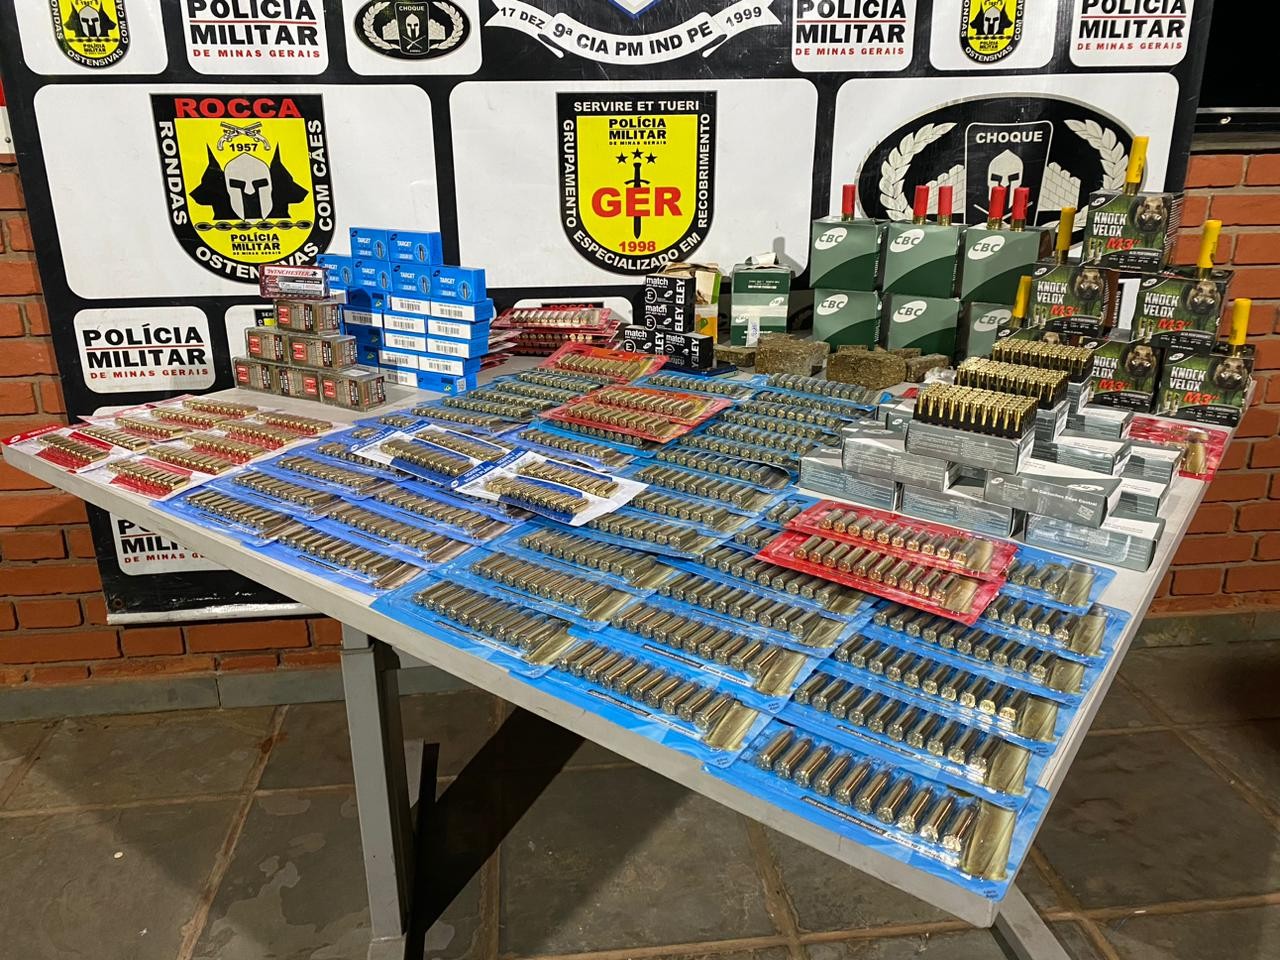 Homem é preso e quase 4 mil munições são apreendidas em casa no Bairro Martins, em Uberlândia